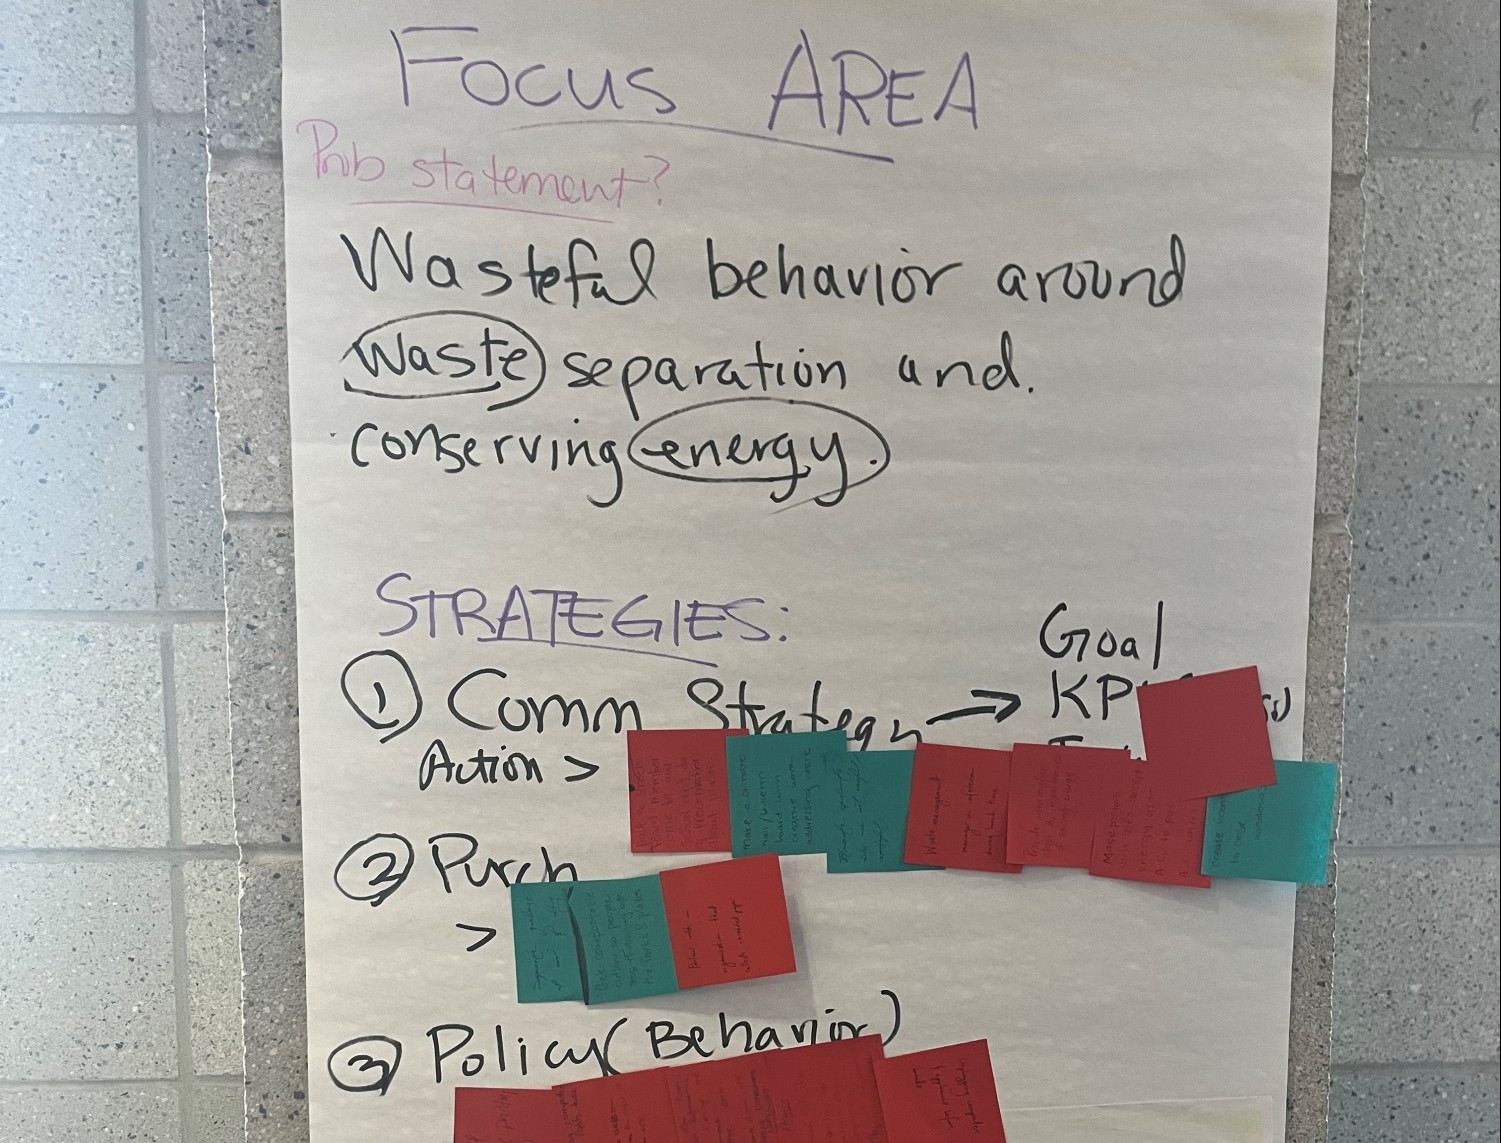 Focus area brainstorming session